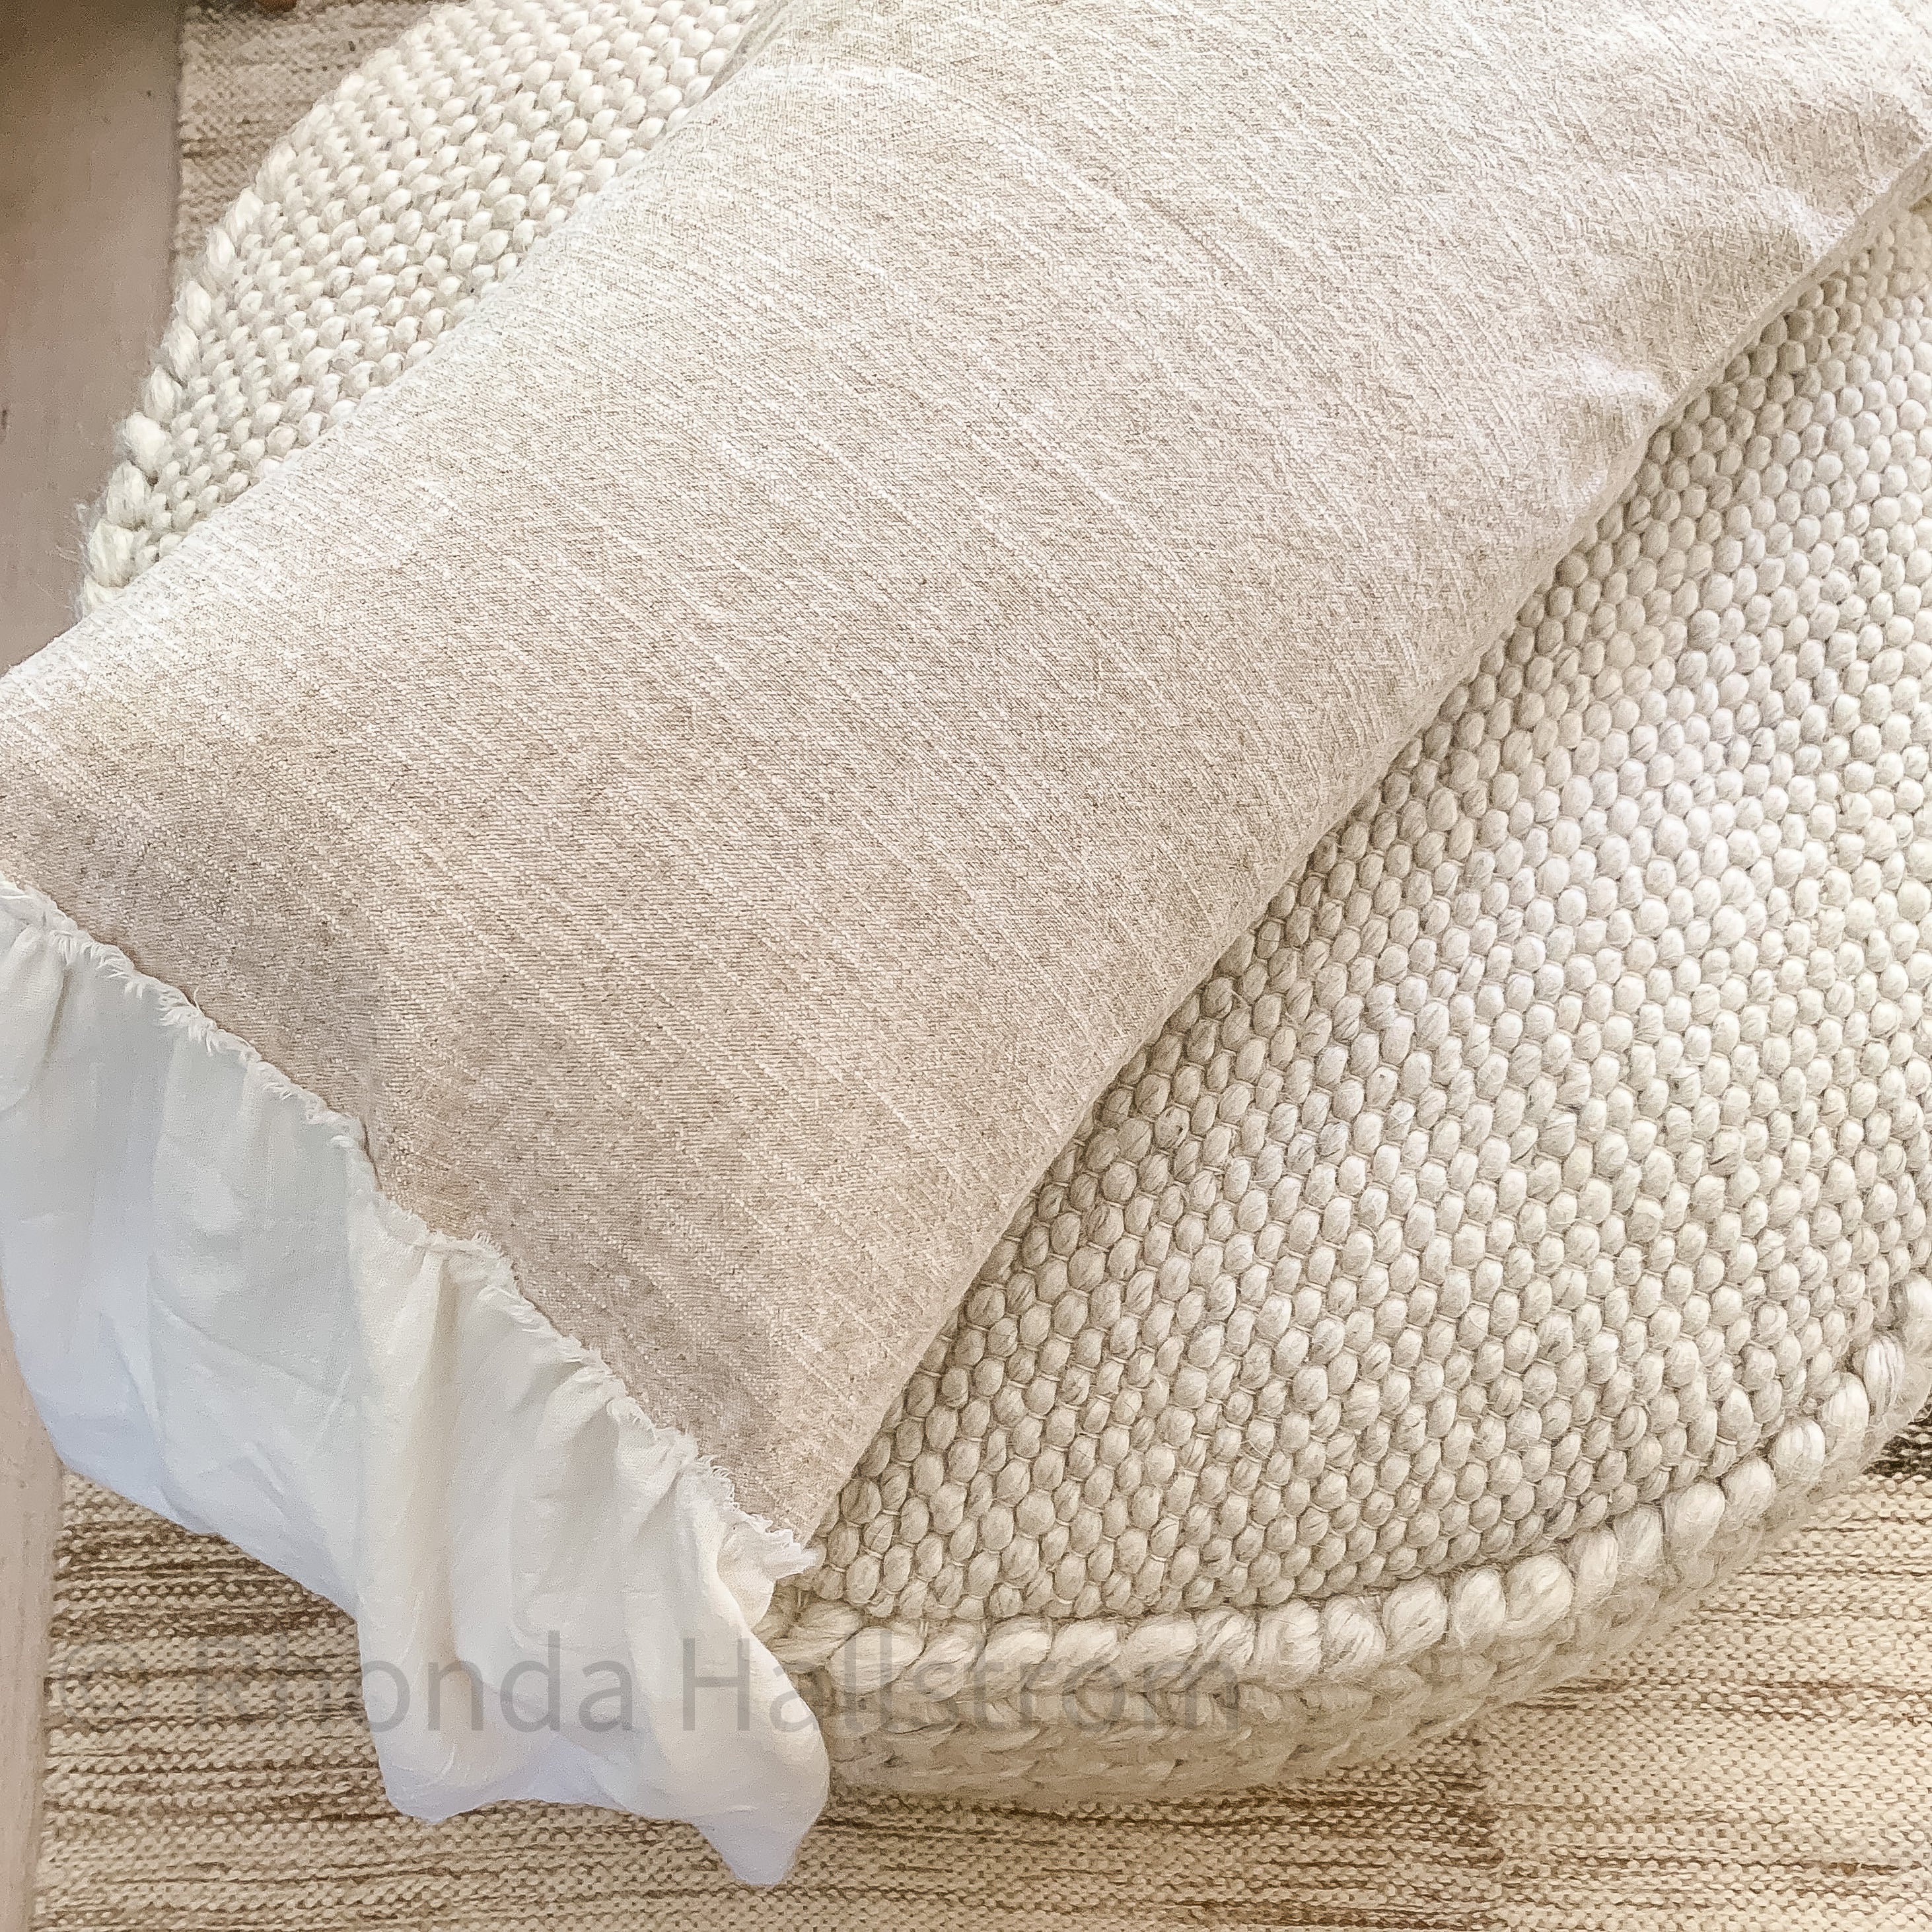 Flax Linen Lumbar Pillow with Ruffles – Hallstrom Home